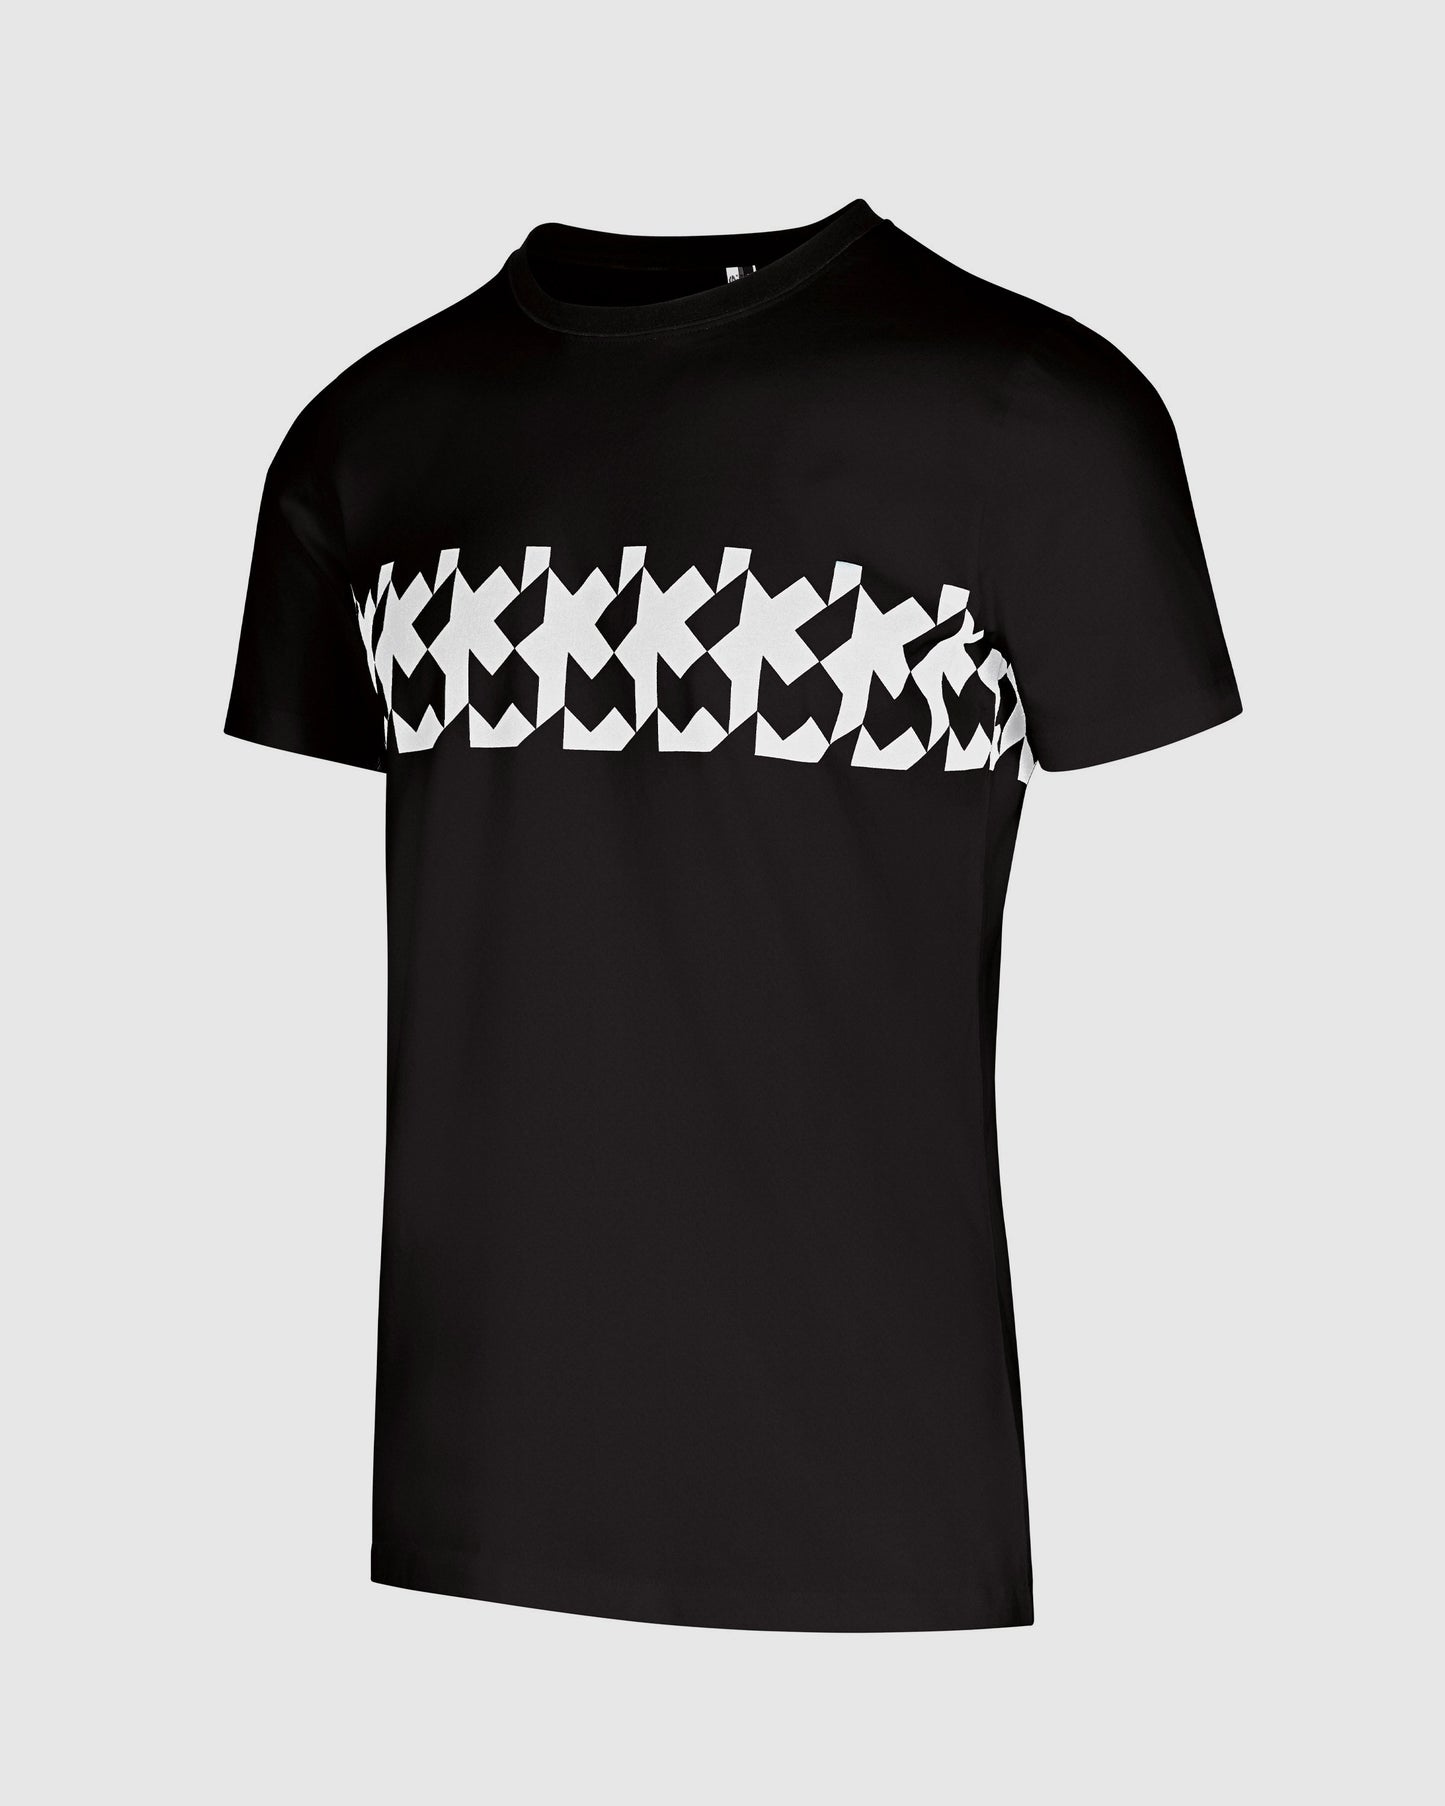 Assos Summer T-Shirt RS Griffe Black Series - FINAL SALE